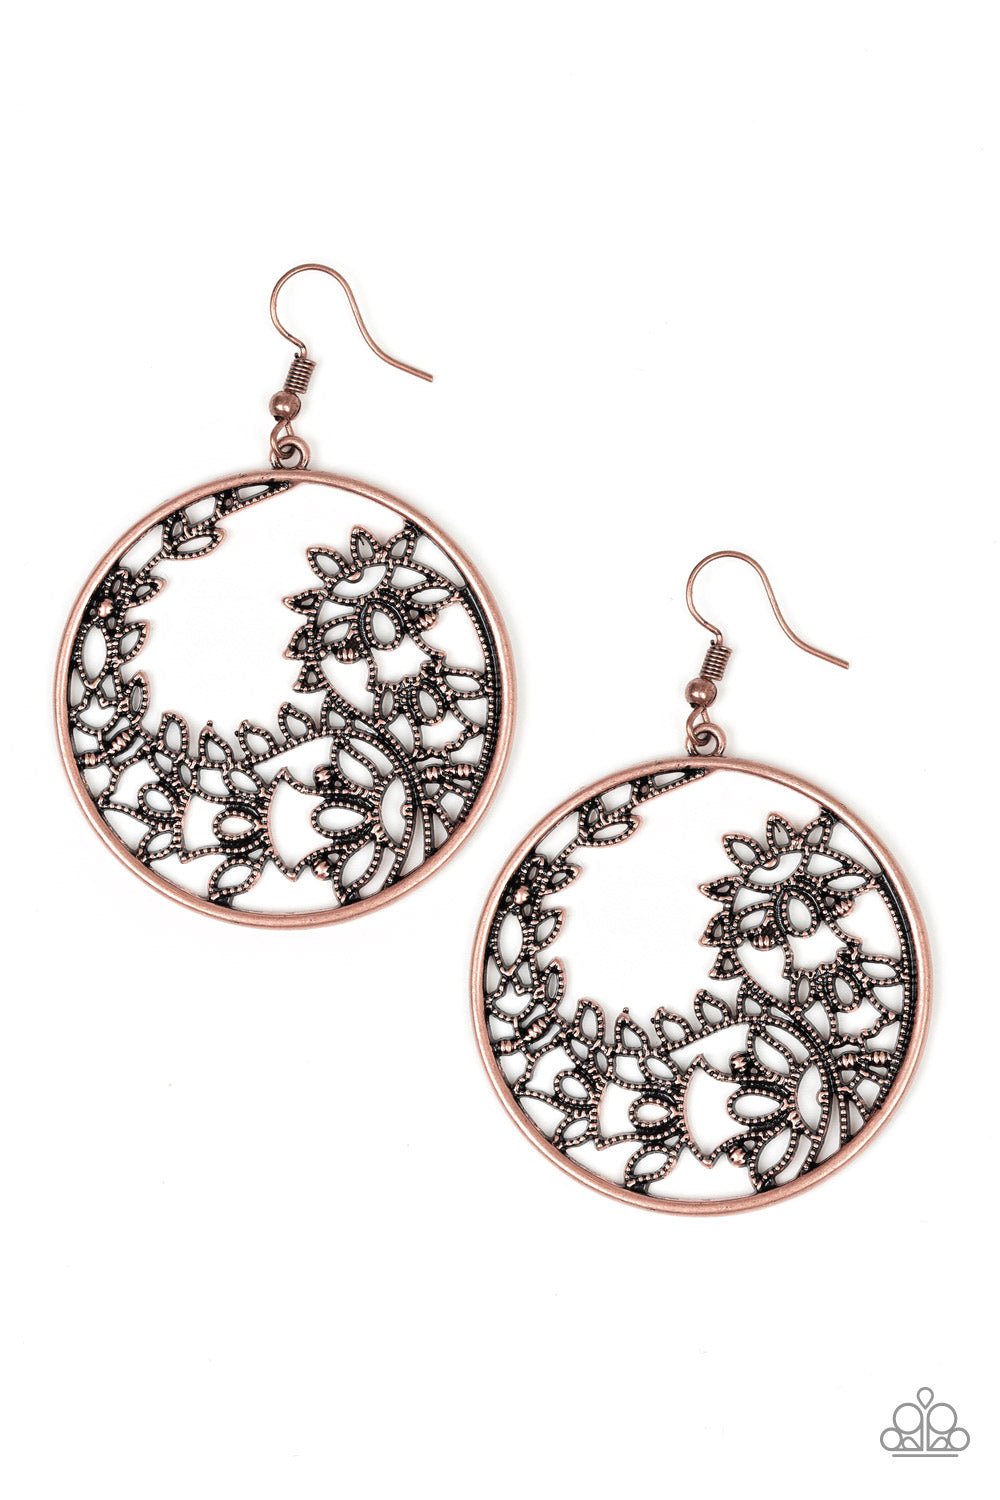 Get Into VINE - Copper Earrings